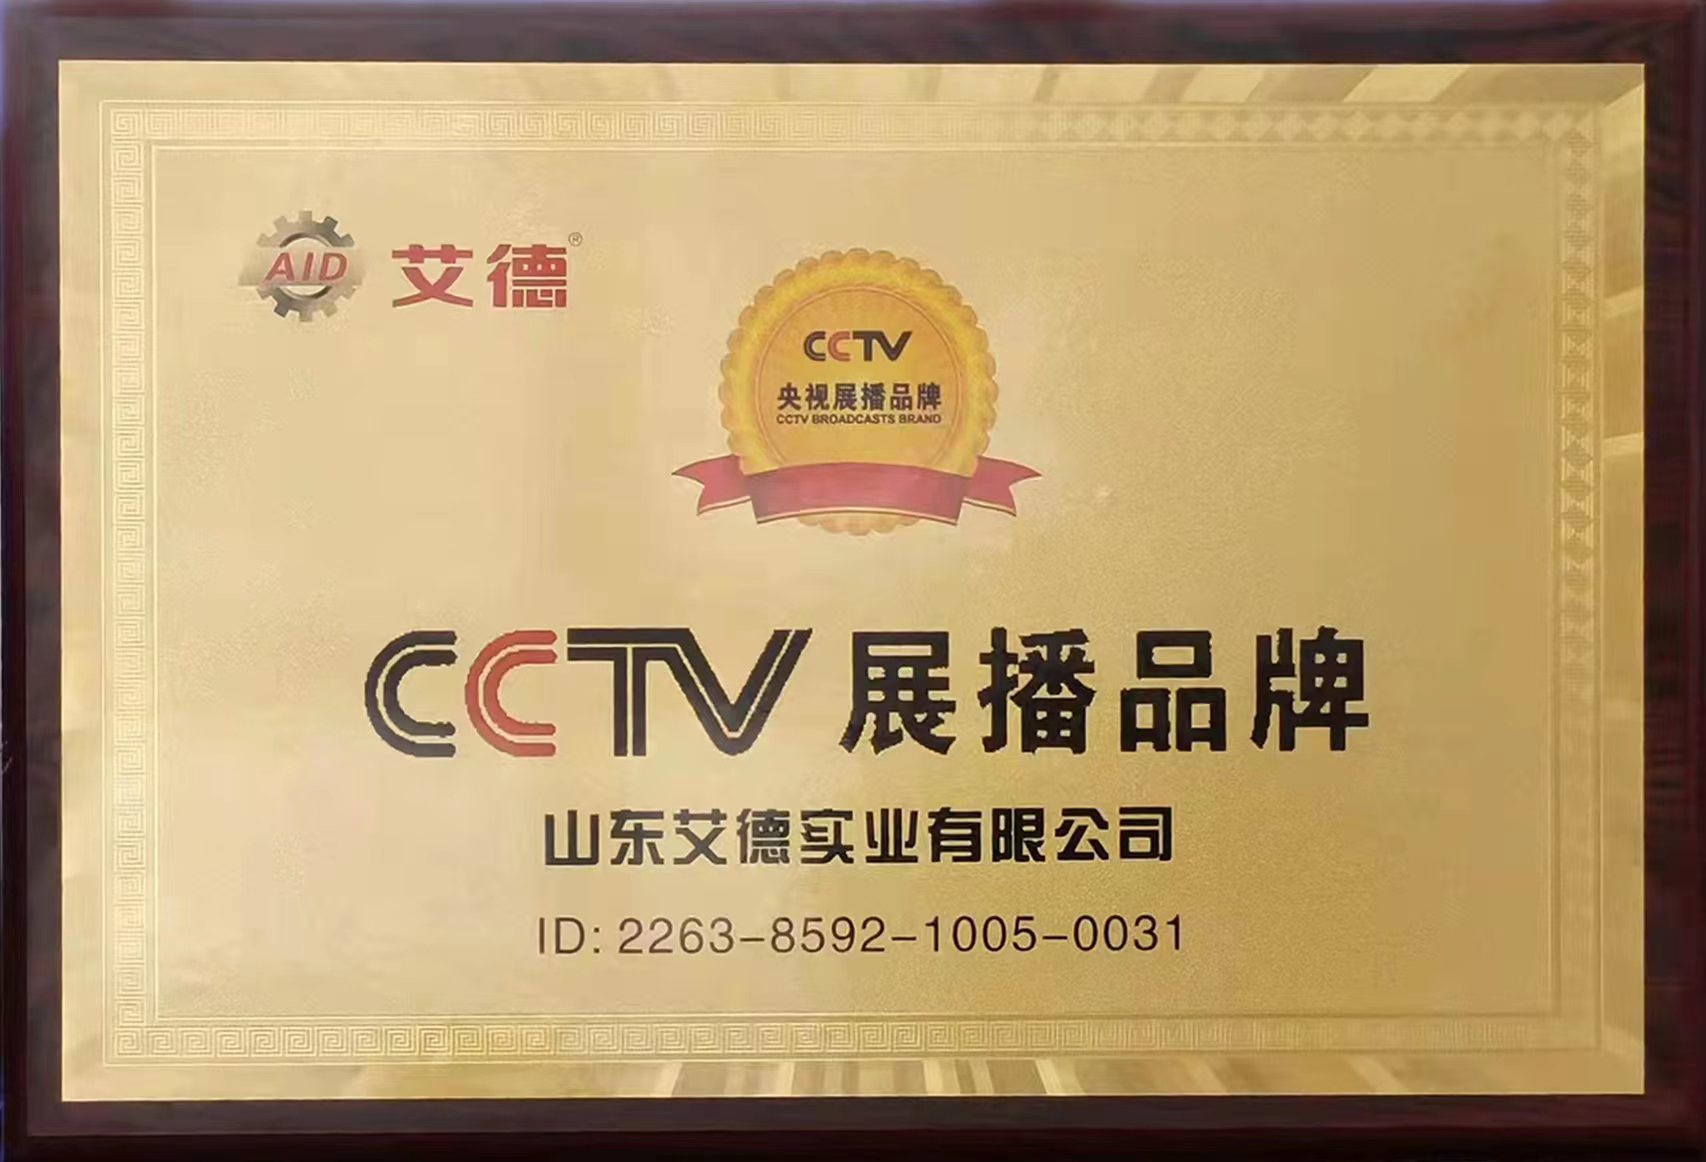 CCTV展播品牌-山东艾德